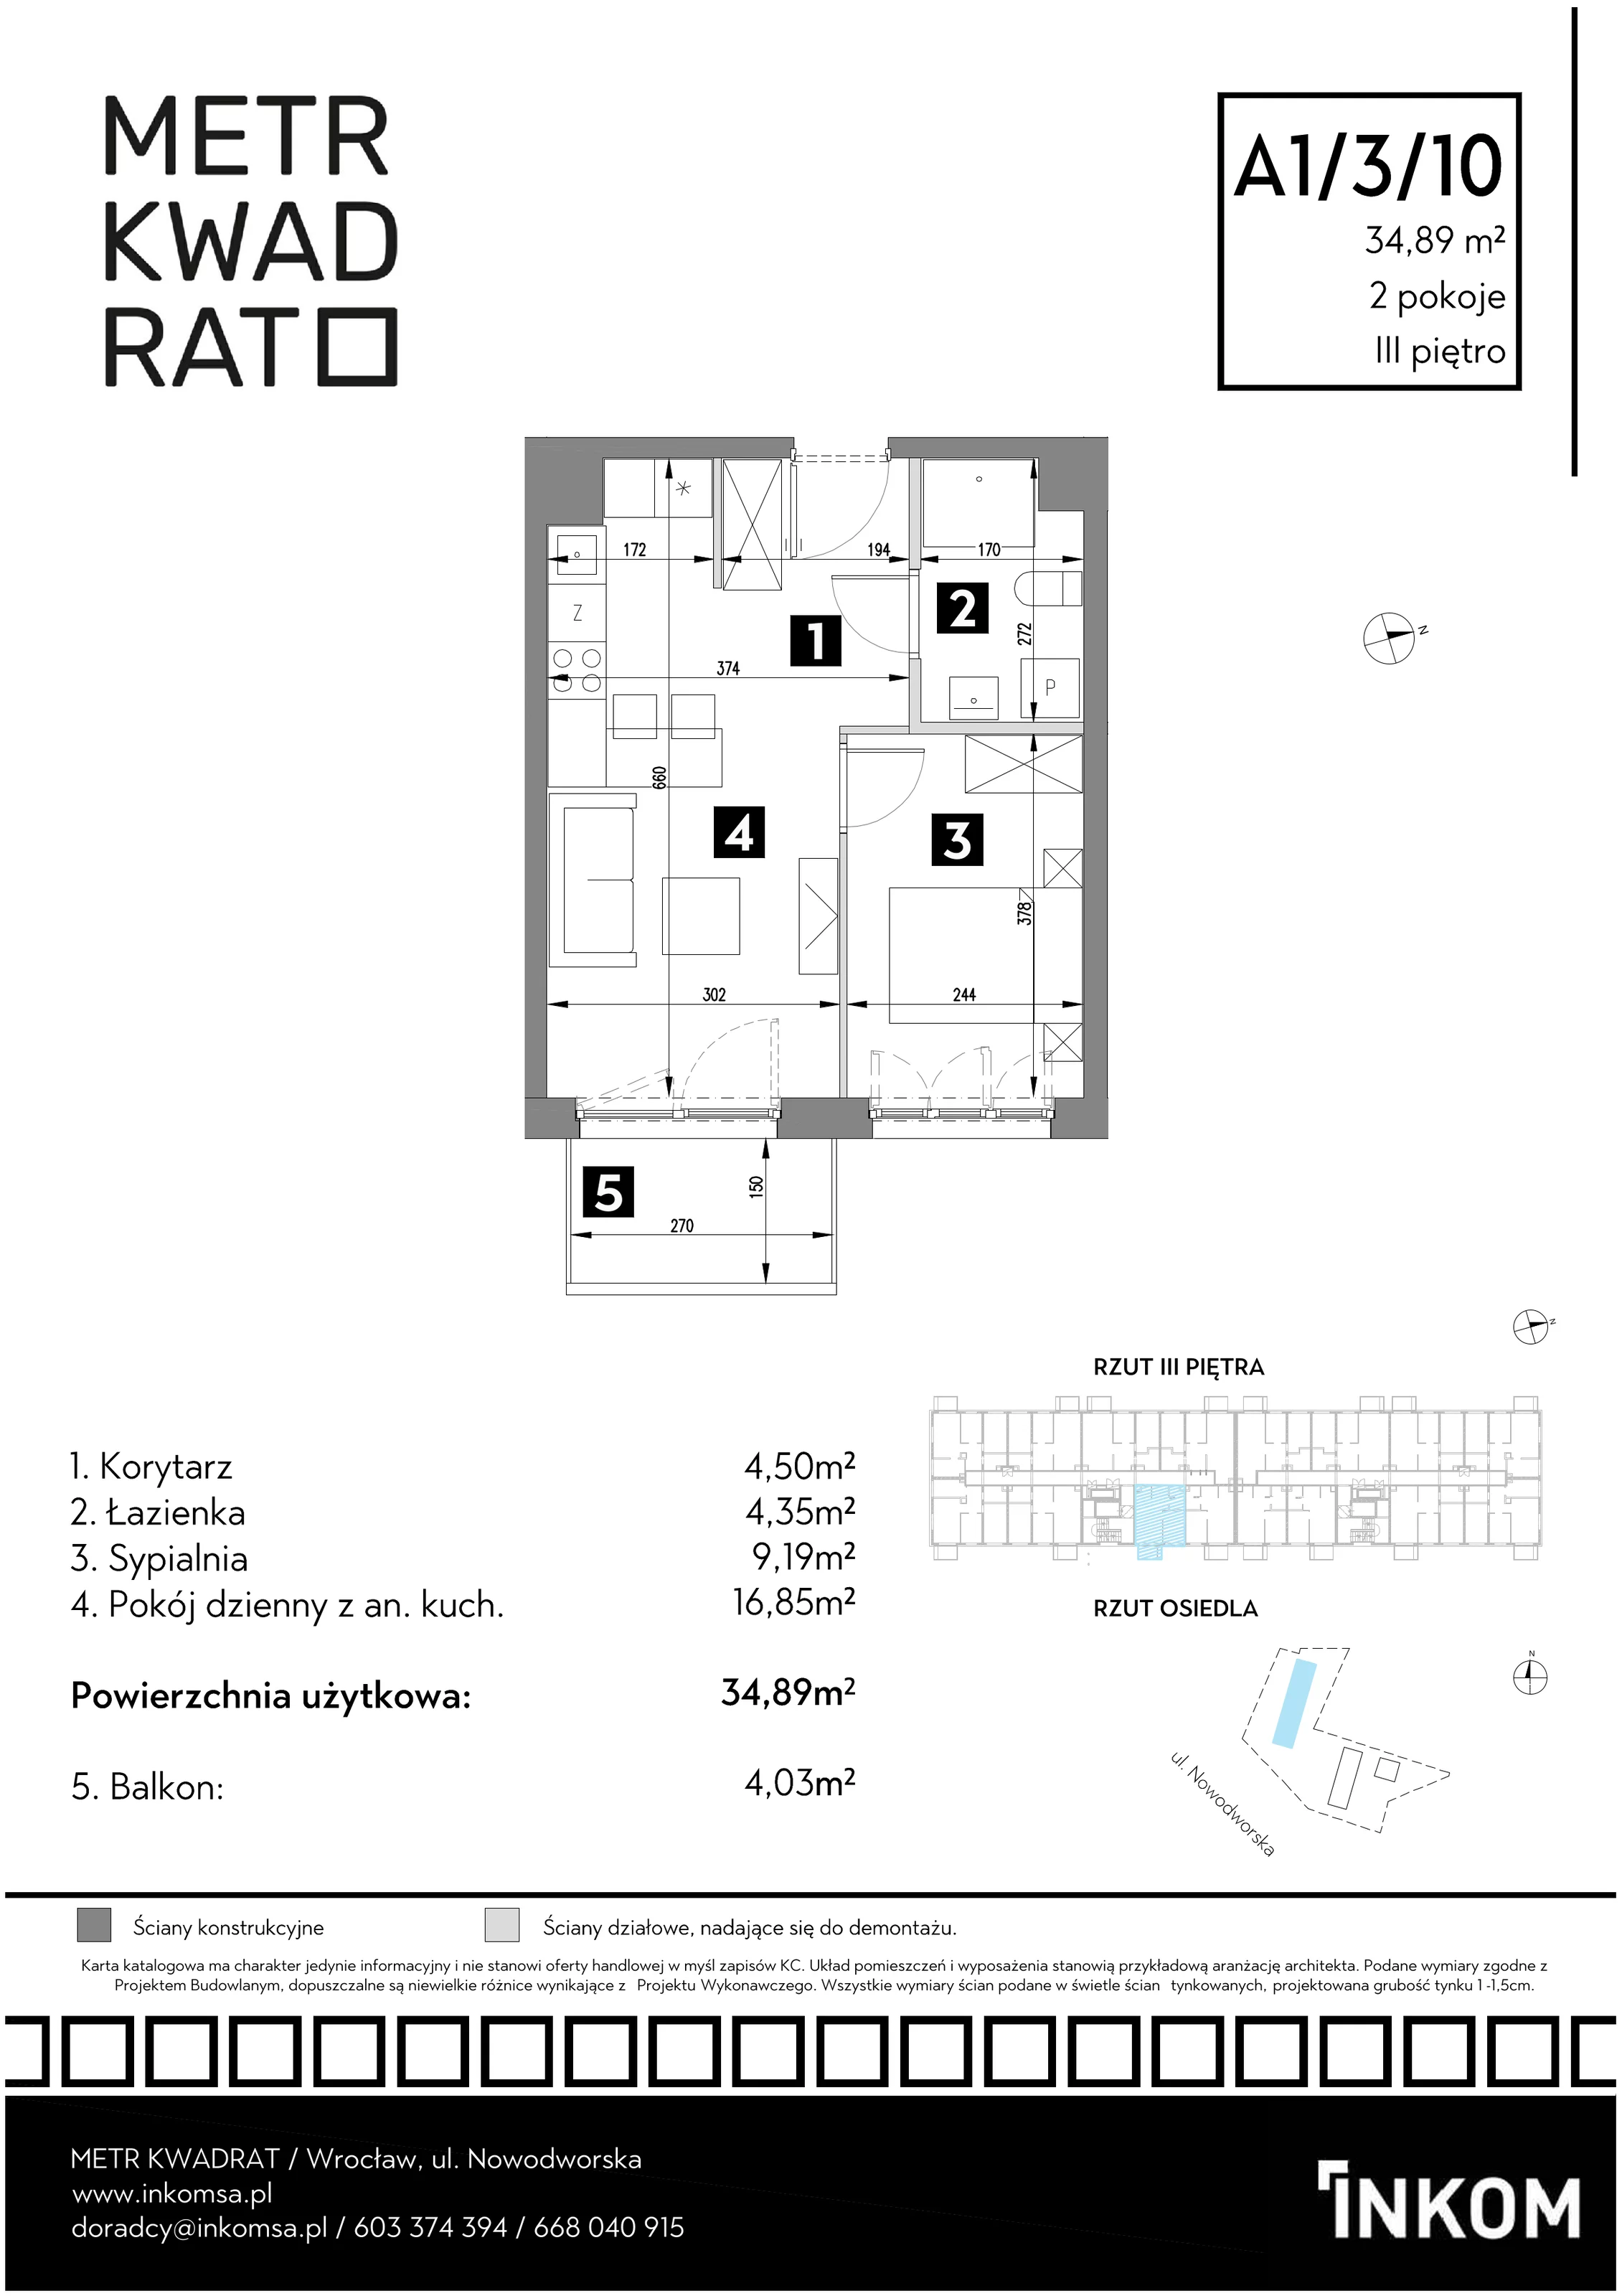 Mieszkanie 34,89 m², piętro 3, oferta nr A1/3/10, Metr Kwadrat, Wrocław, Nowy Dwór, ul. Nowodworska 17B